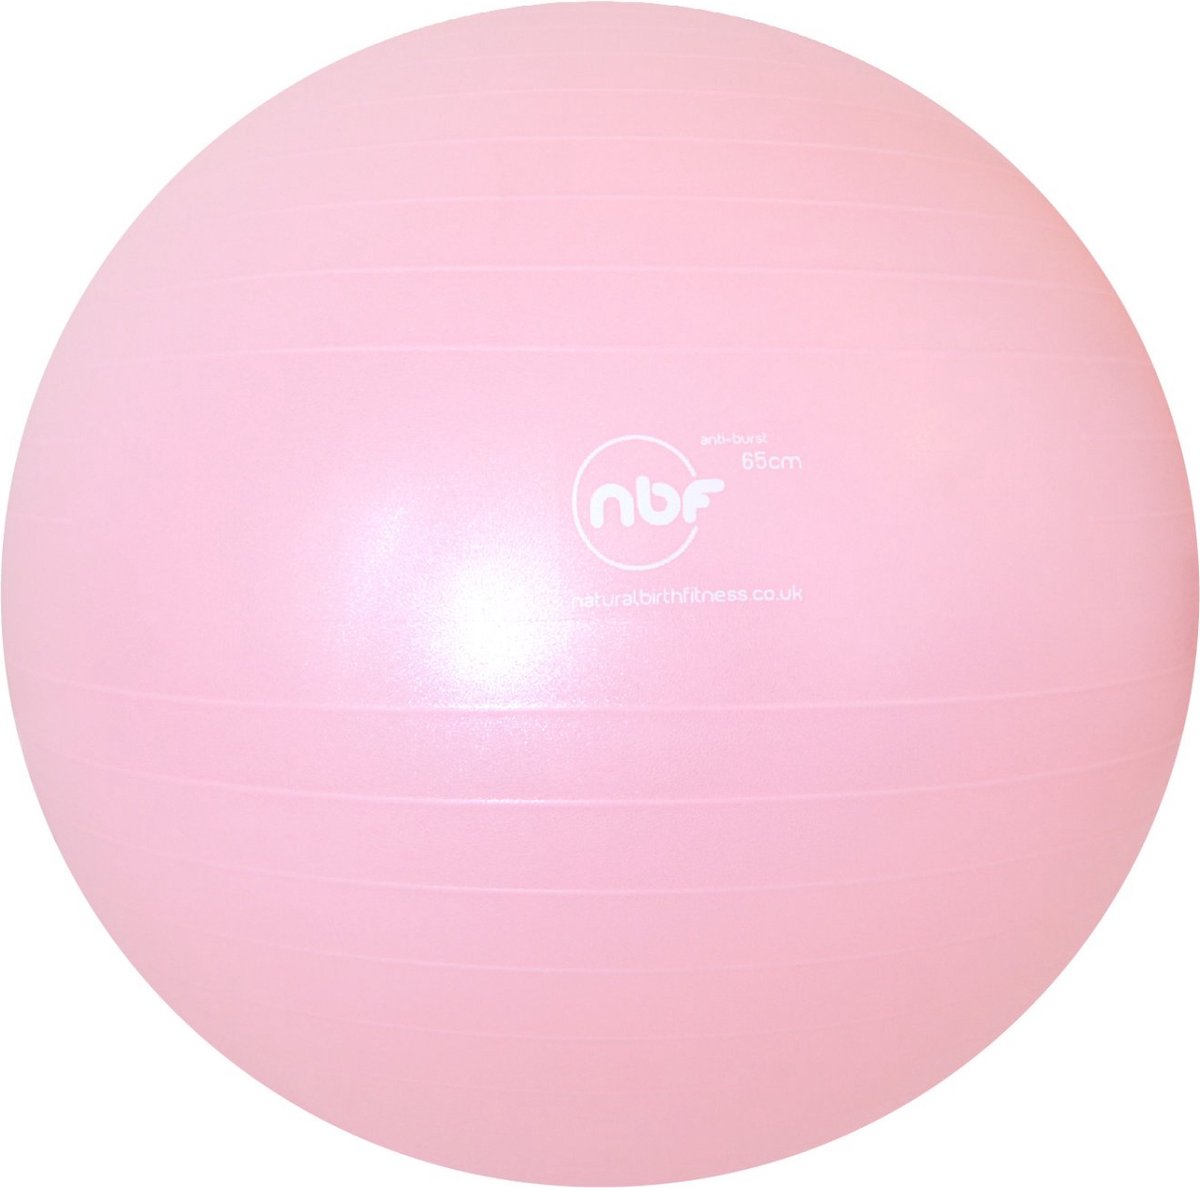 Birth Ball - 75 cm - roze - Natural Birth & Fitness Ball met pomp - Zwangerschapsbal